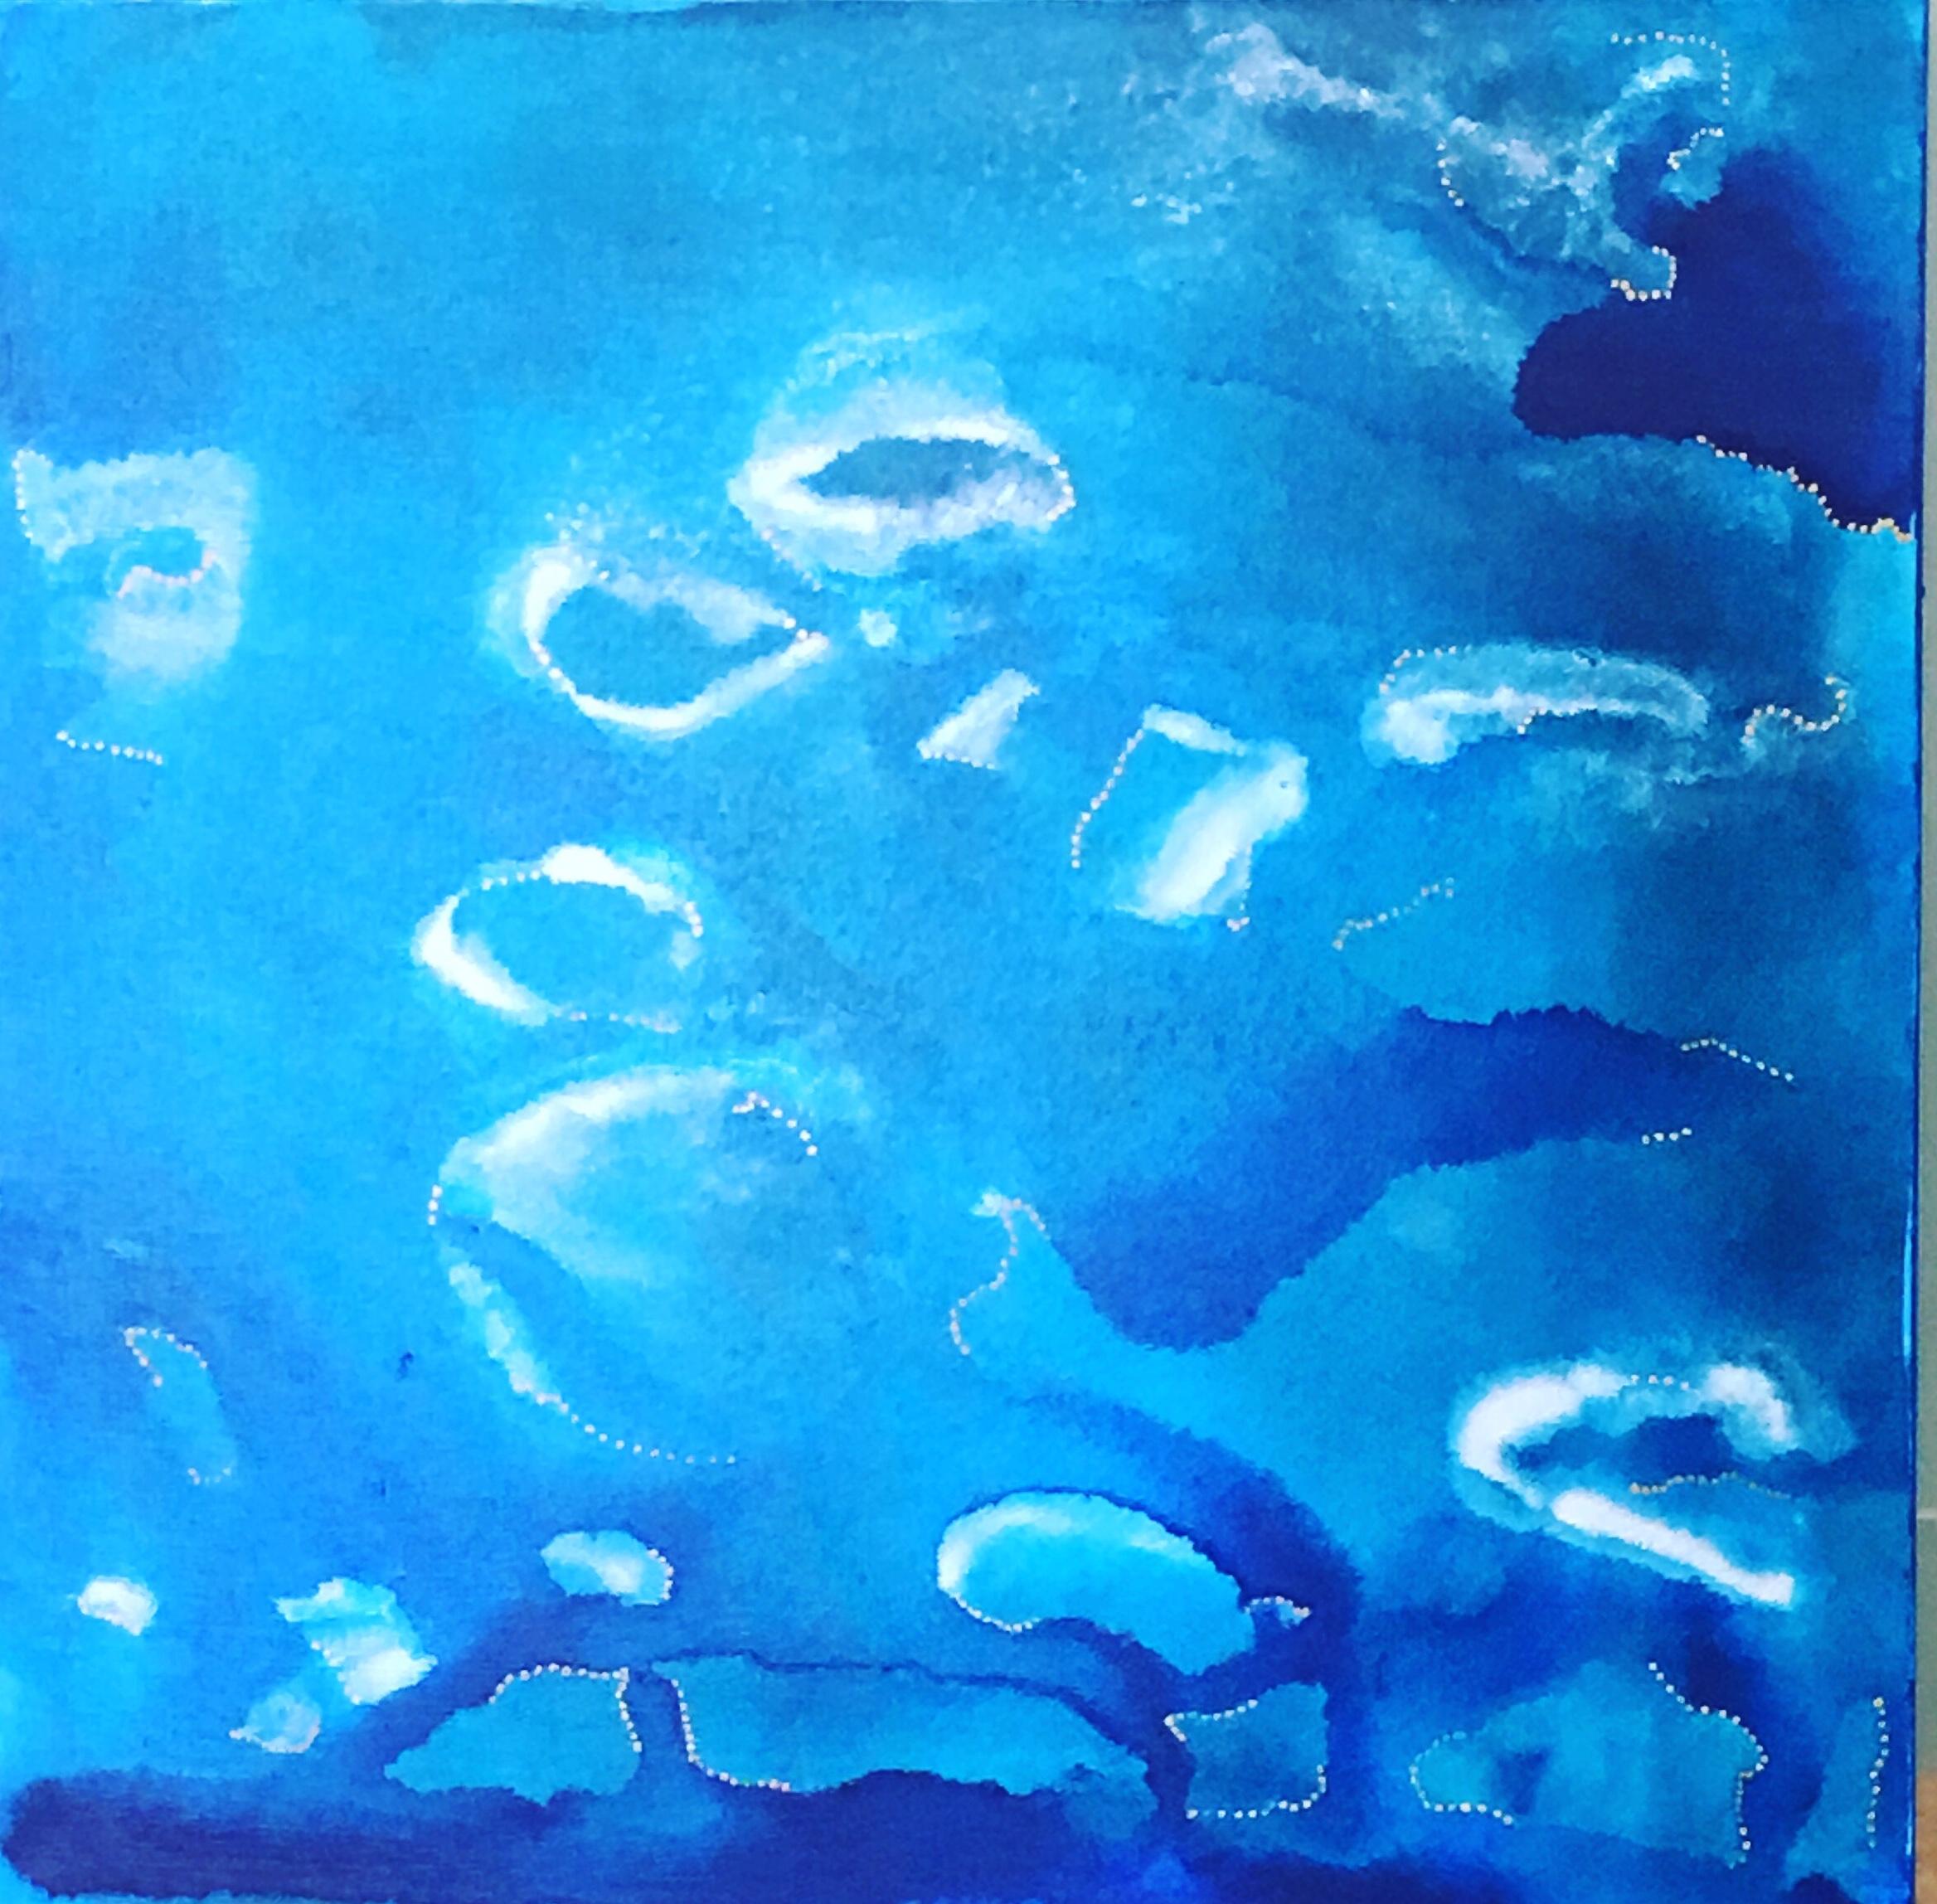 Abstract Painting Melissa Partridge - Peinture abstraite à l'acrylique, « Under the Sea », 2019